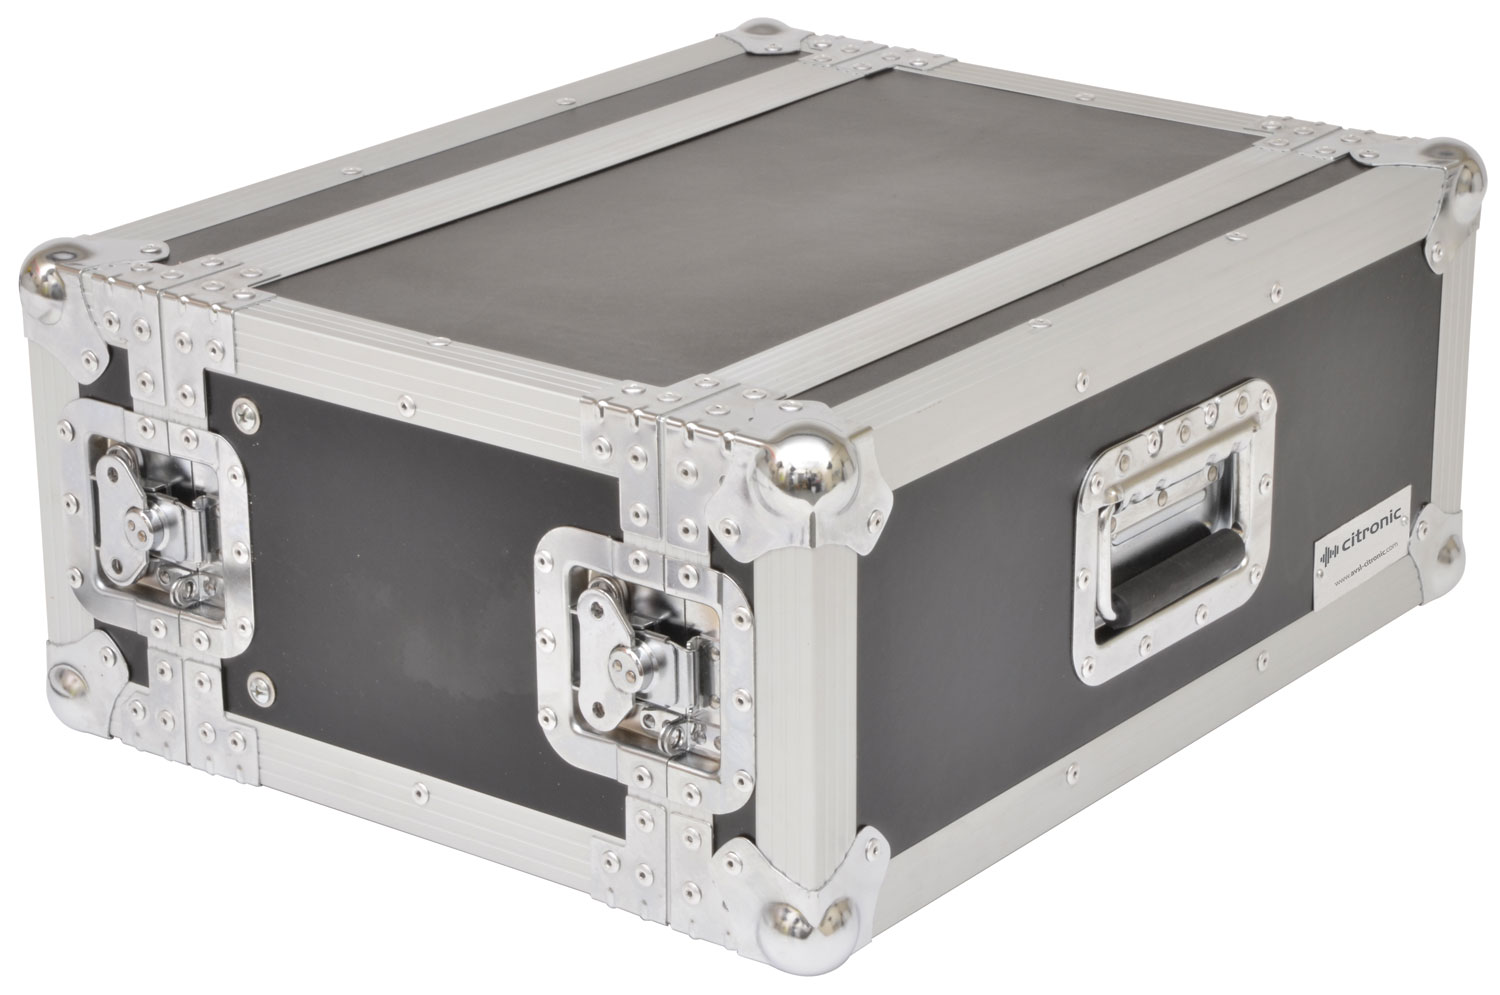 Citronic RACK:4S Βαλίτσα μεταφοράς 19″ για εξοπλισμό ήχου (Τεμάχιο)